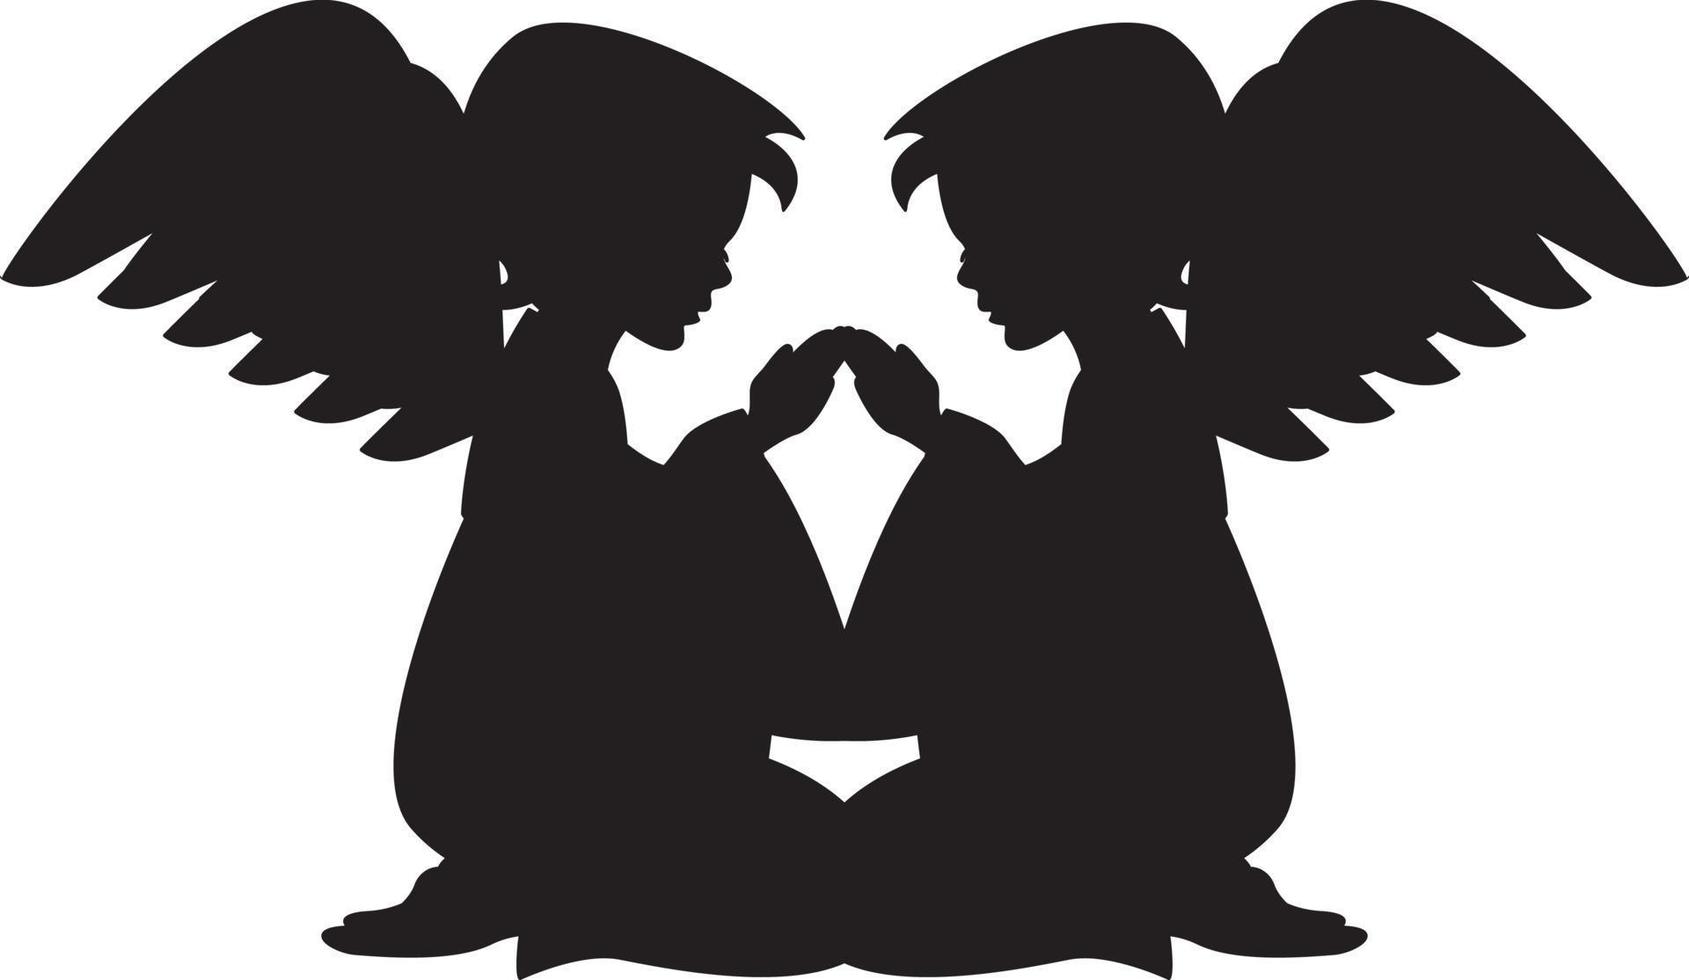 knästående änglar i silhuett illustration vektor